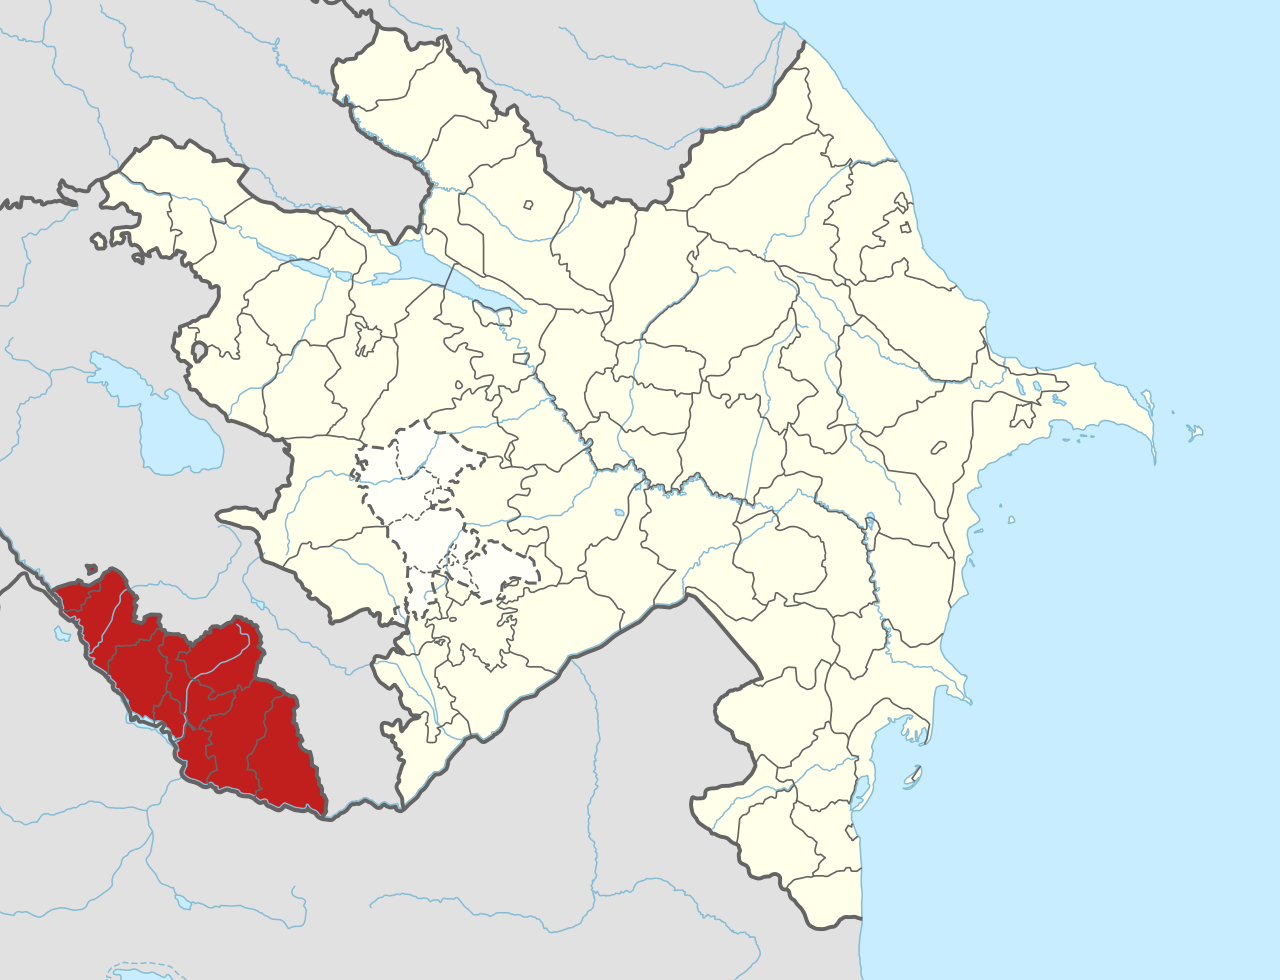 Nakhchivan Autonomous Republic within Azerbaijan